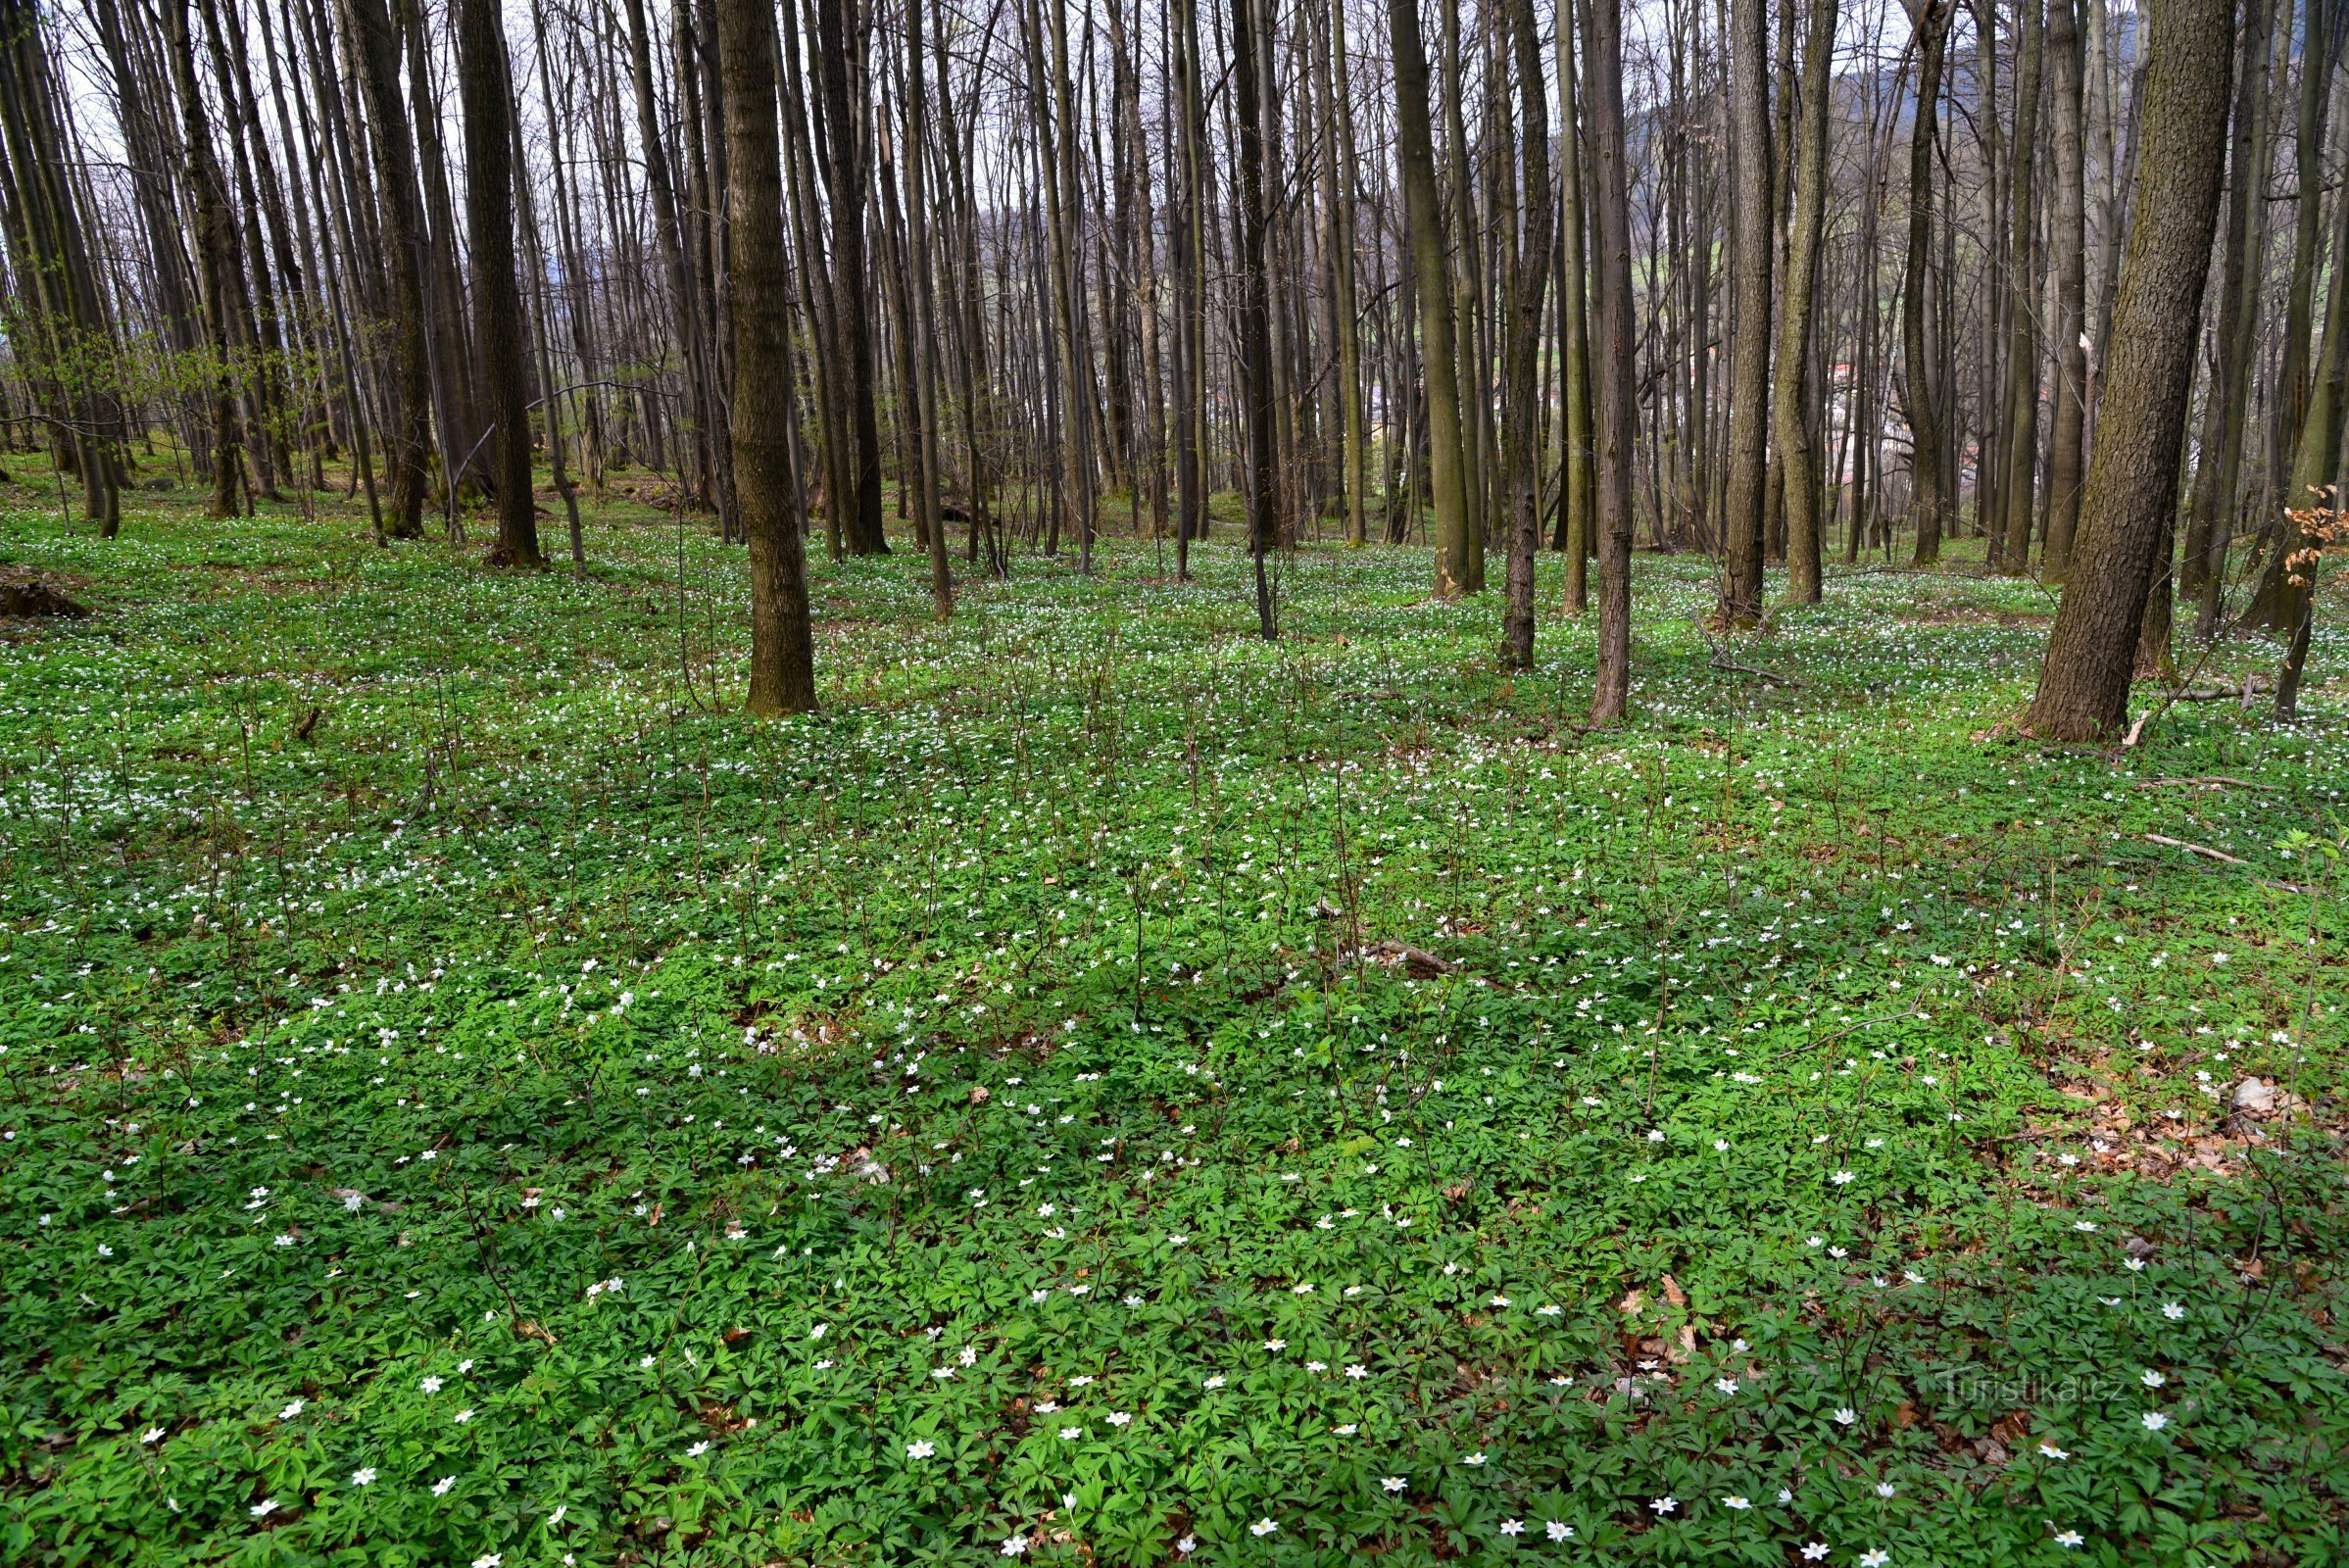 Zlatohorská vrchovina: forest above Česká Vsí with a spring aspect